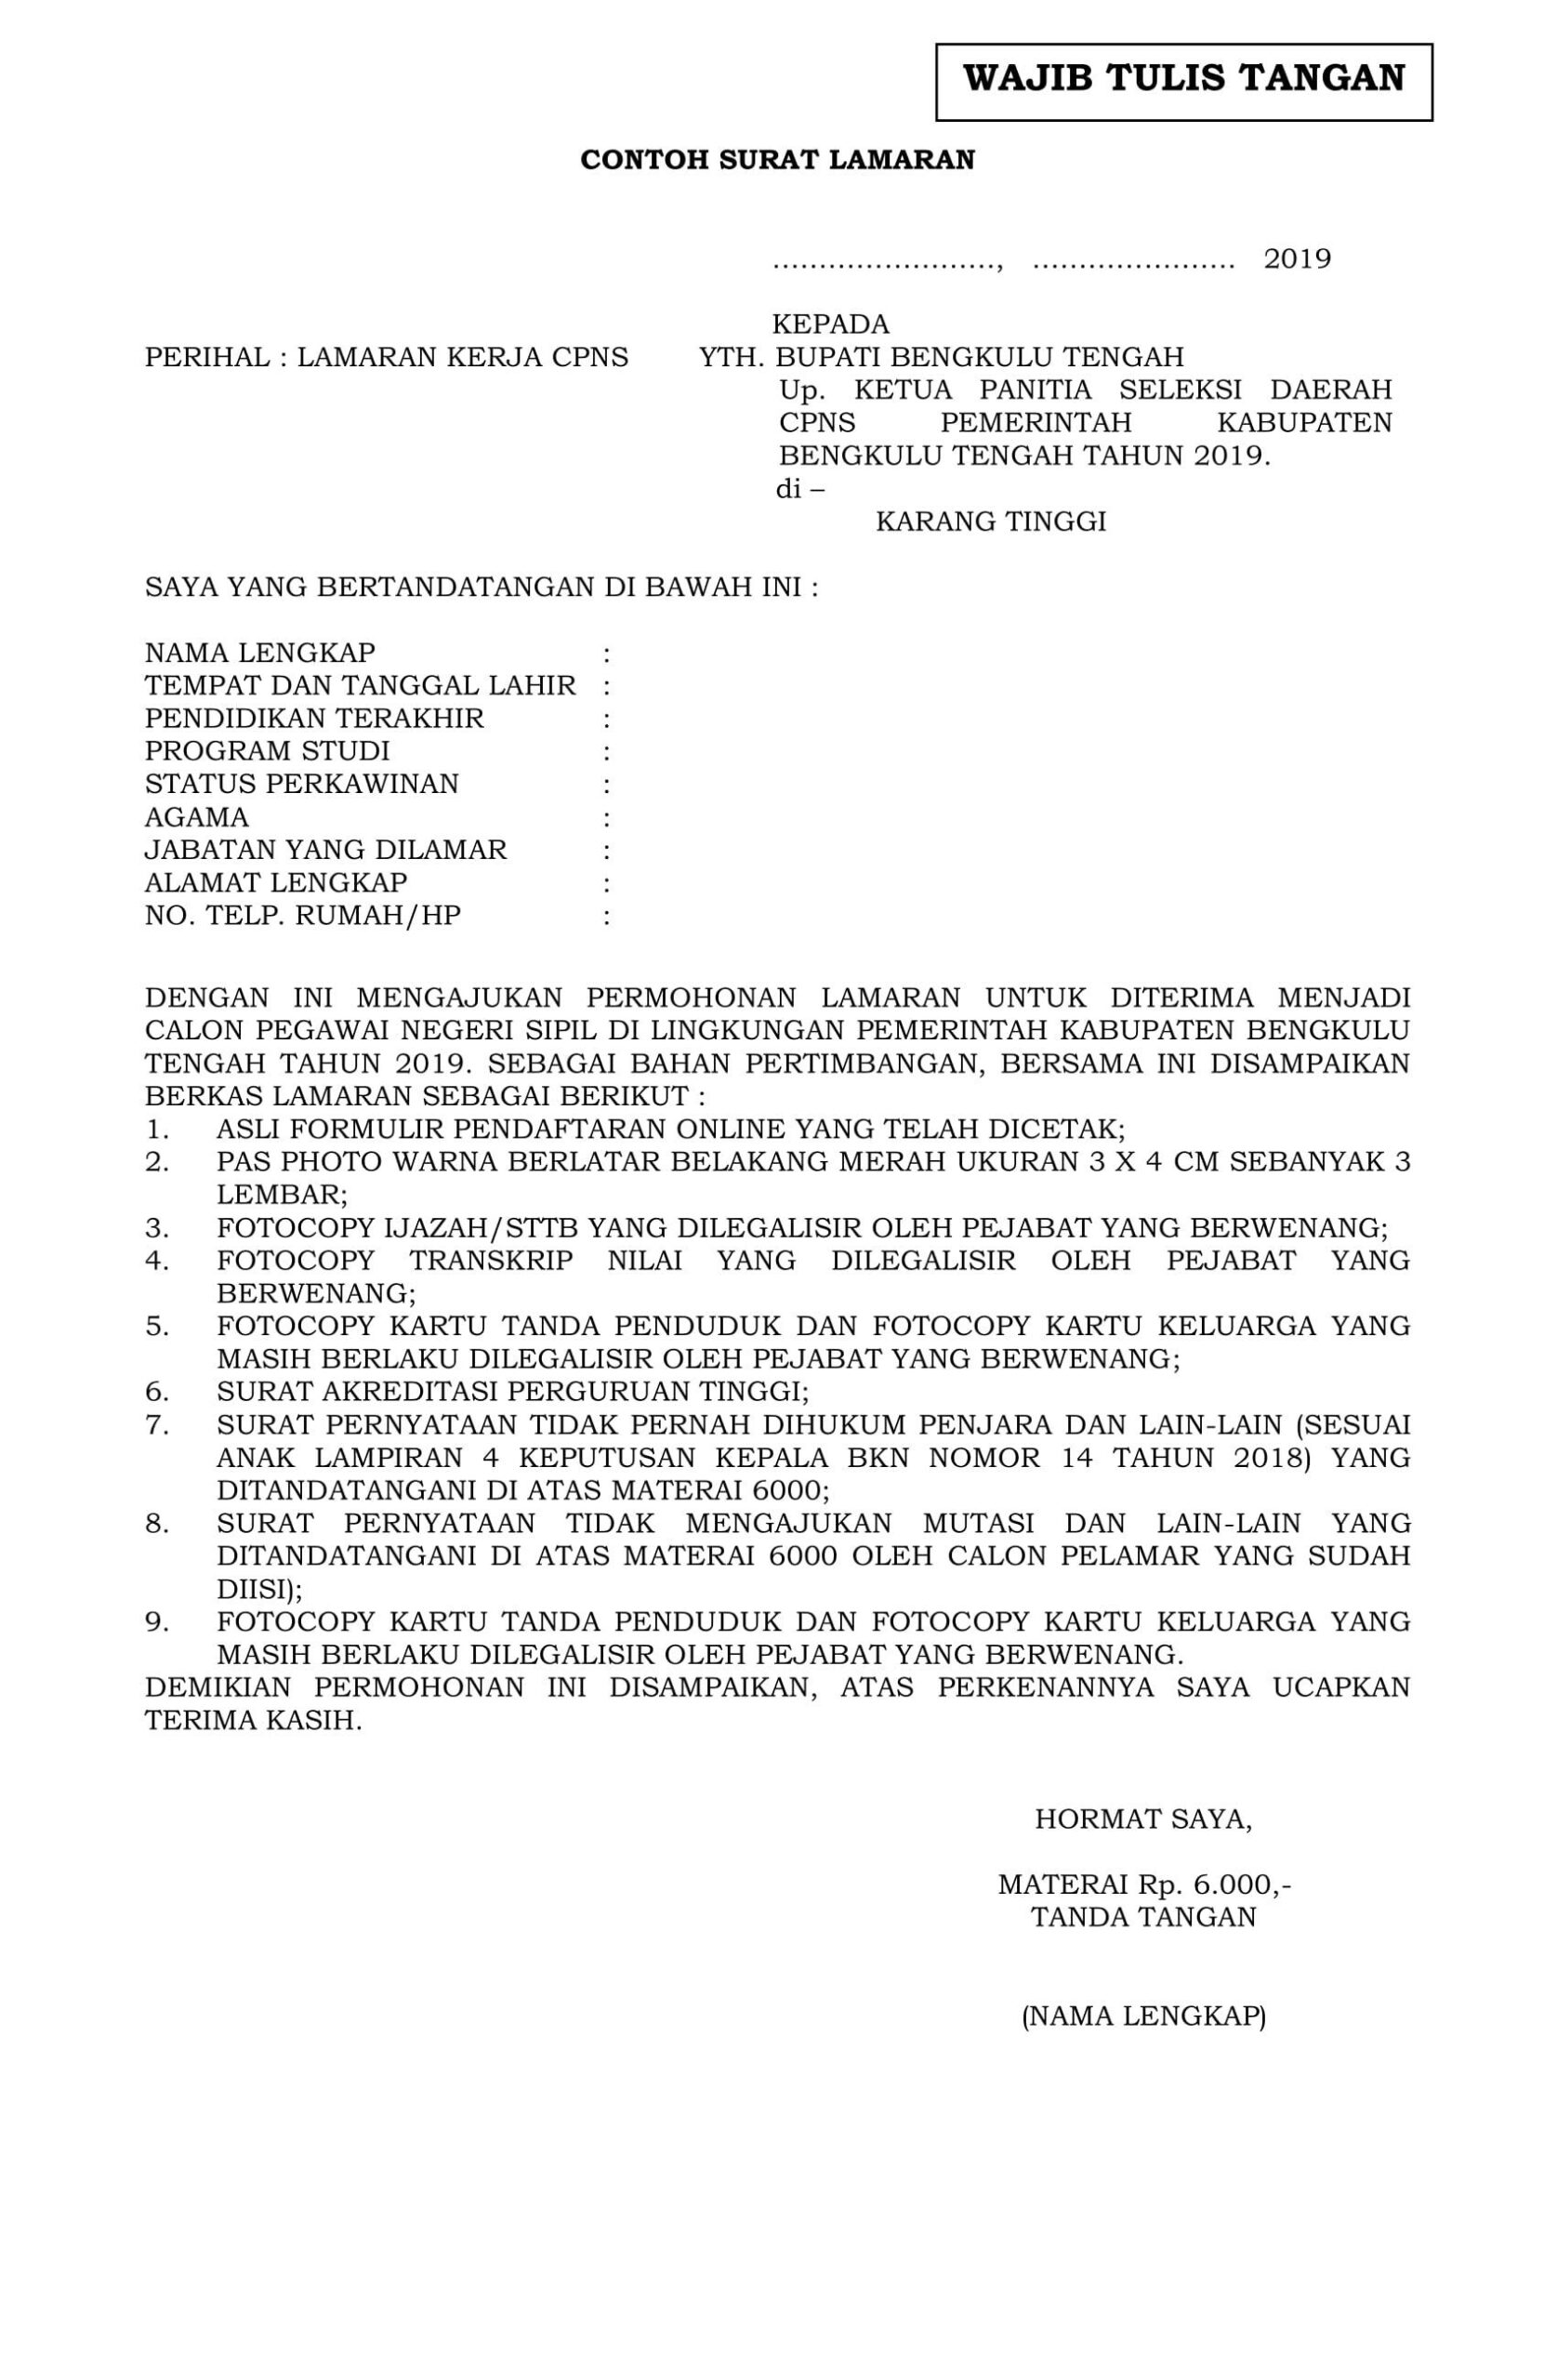 Contoh Surat Lamaran Cpns Ke Pemerintah Kabupaten Pringsewu